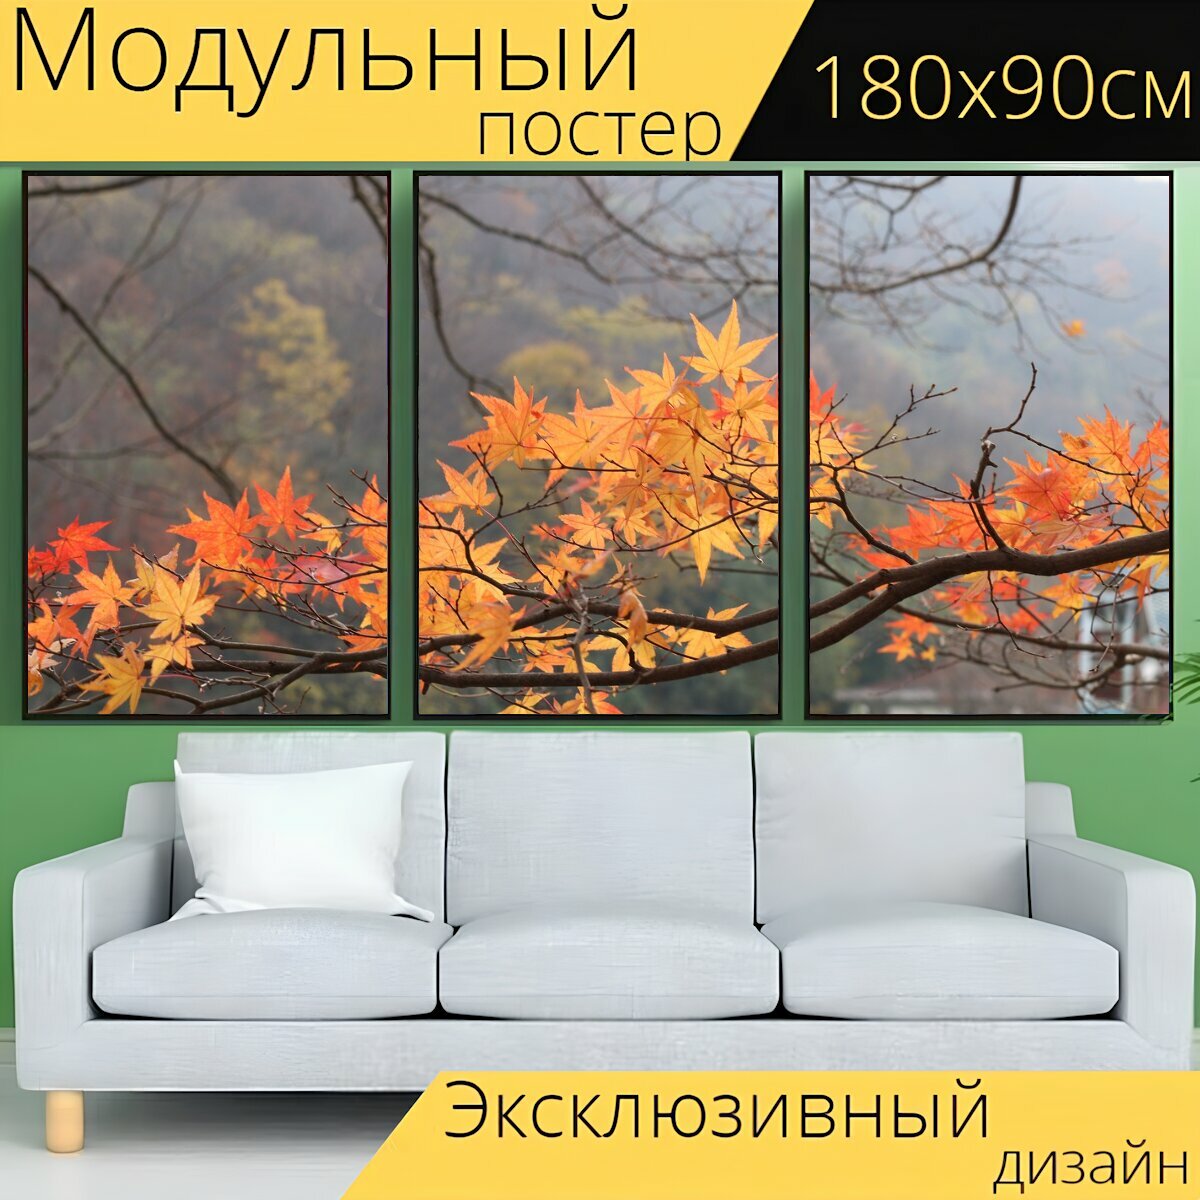 Модульный постер "Осенние листья, осень, пейзажи" 180 x 90 см. для интерьера